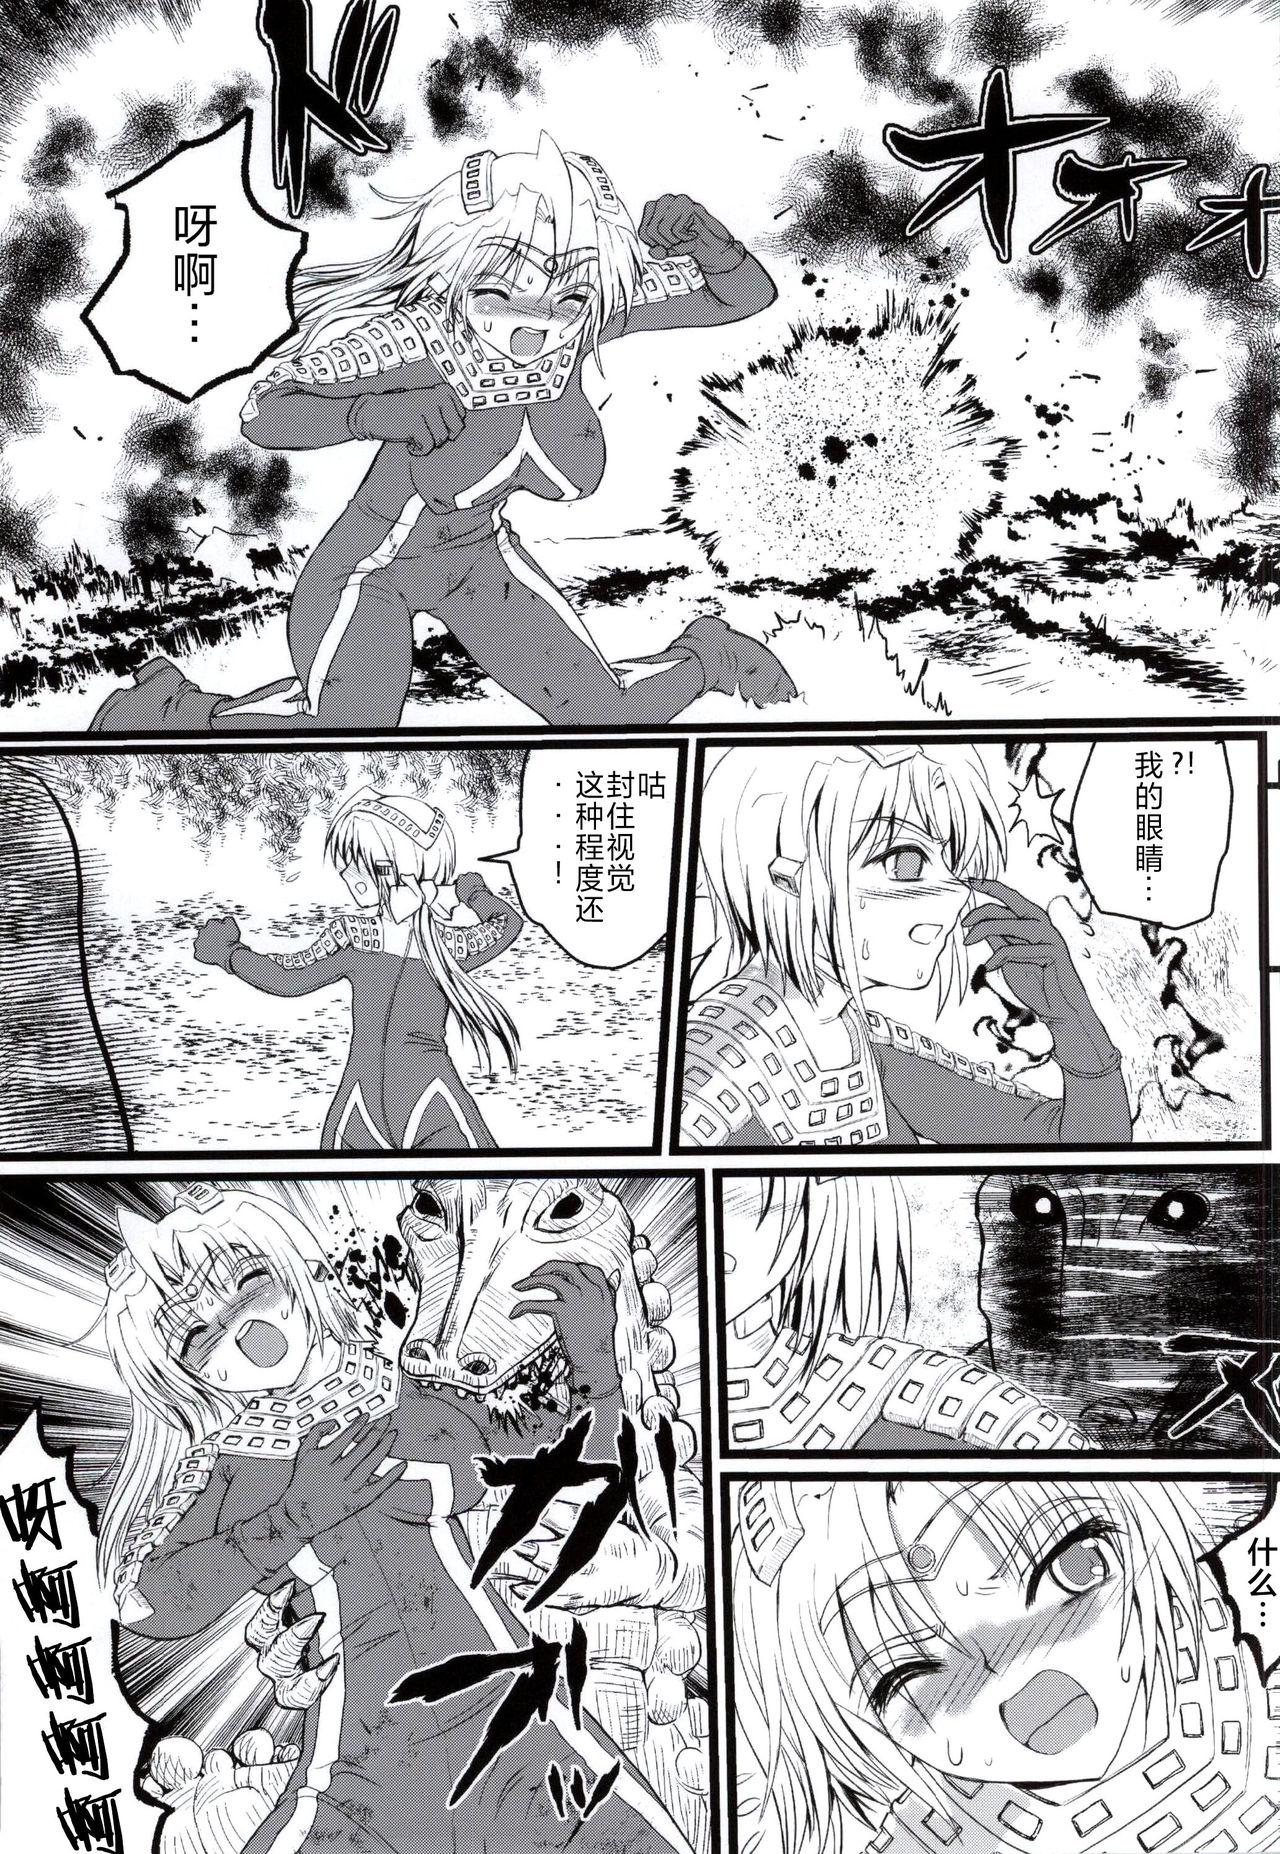 Chicks Ultra Nanako Zettaizetsumei! Vol. 3 - Ultraman Jocks - Page 4